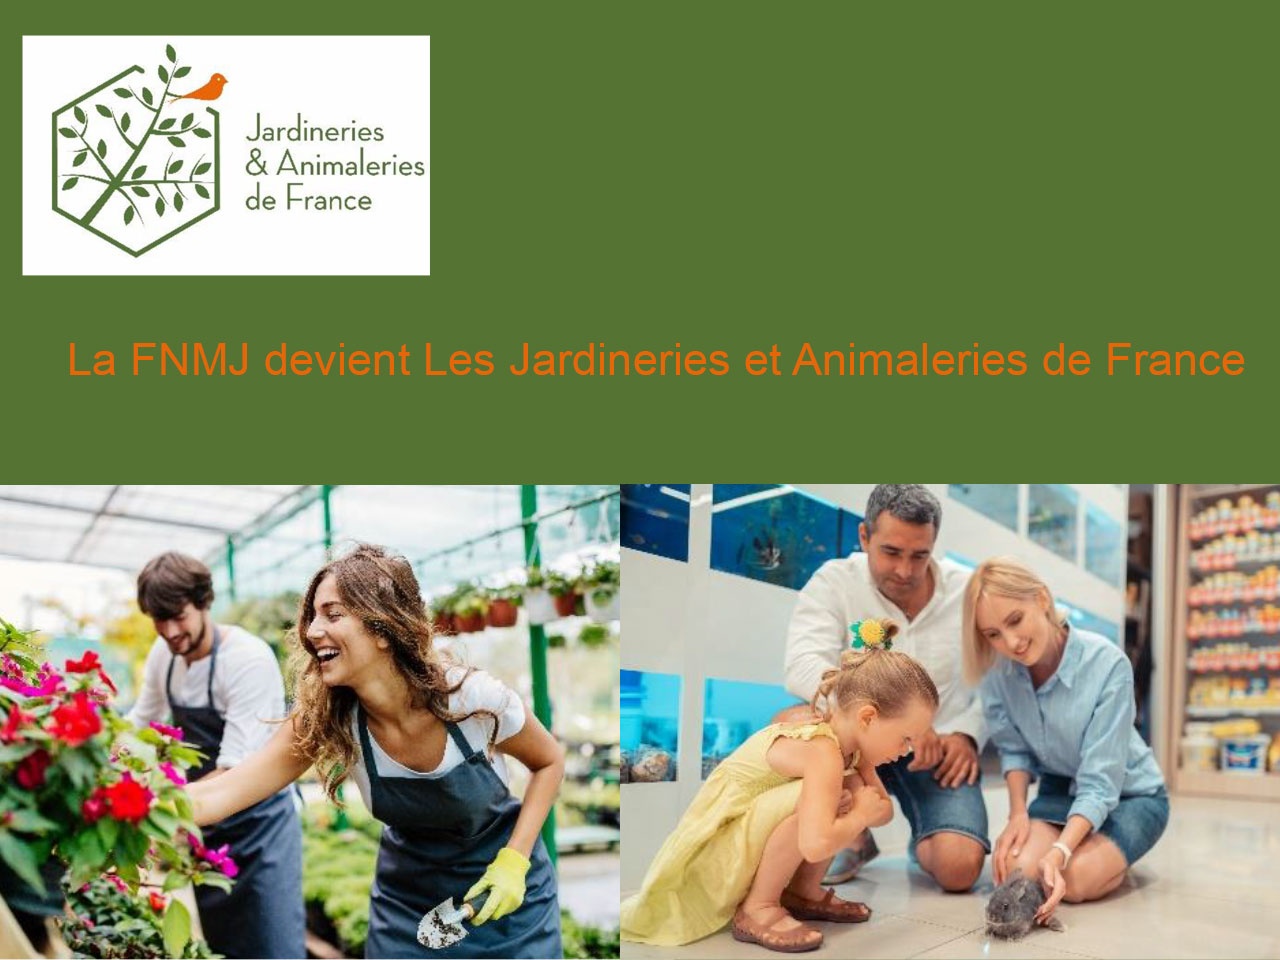 La FNMJ est devenue : Les Jardineries et Animaleries de France